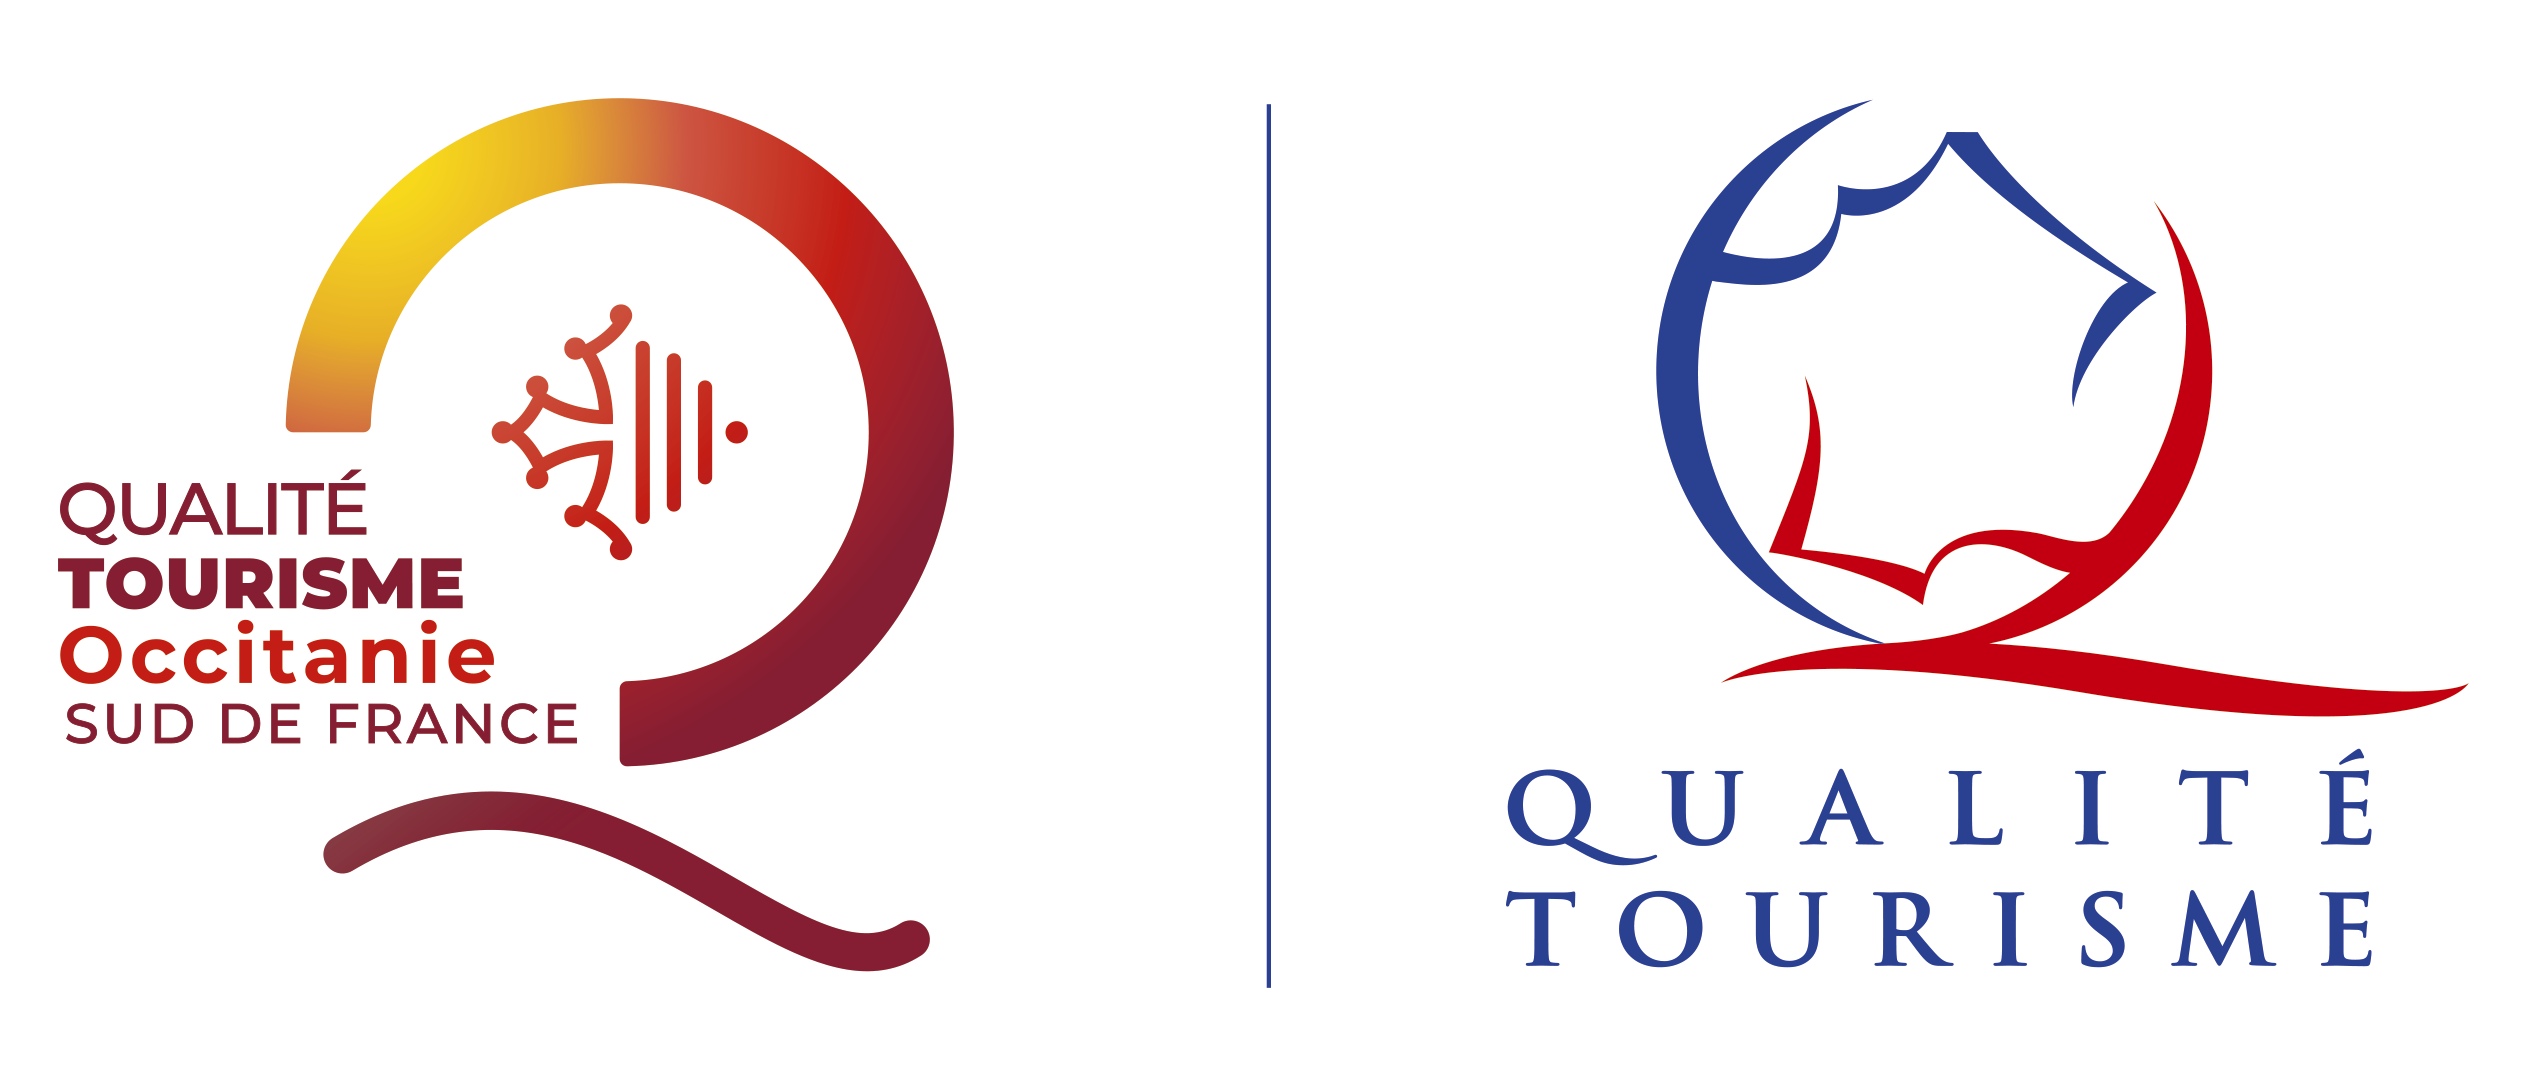 Qualite Tourisme Sud de France Occitanie